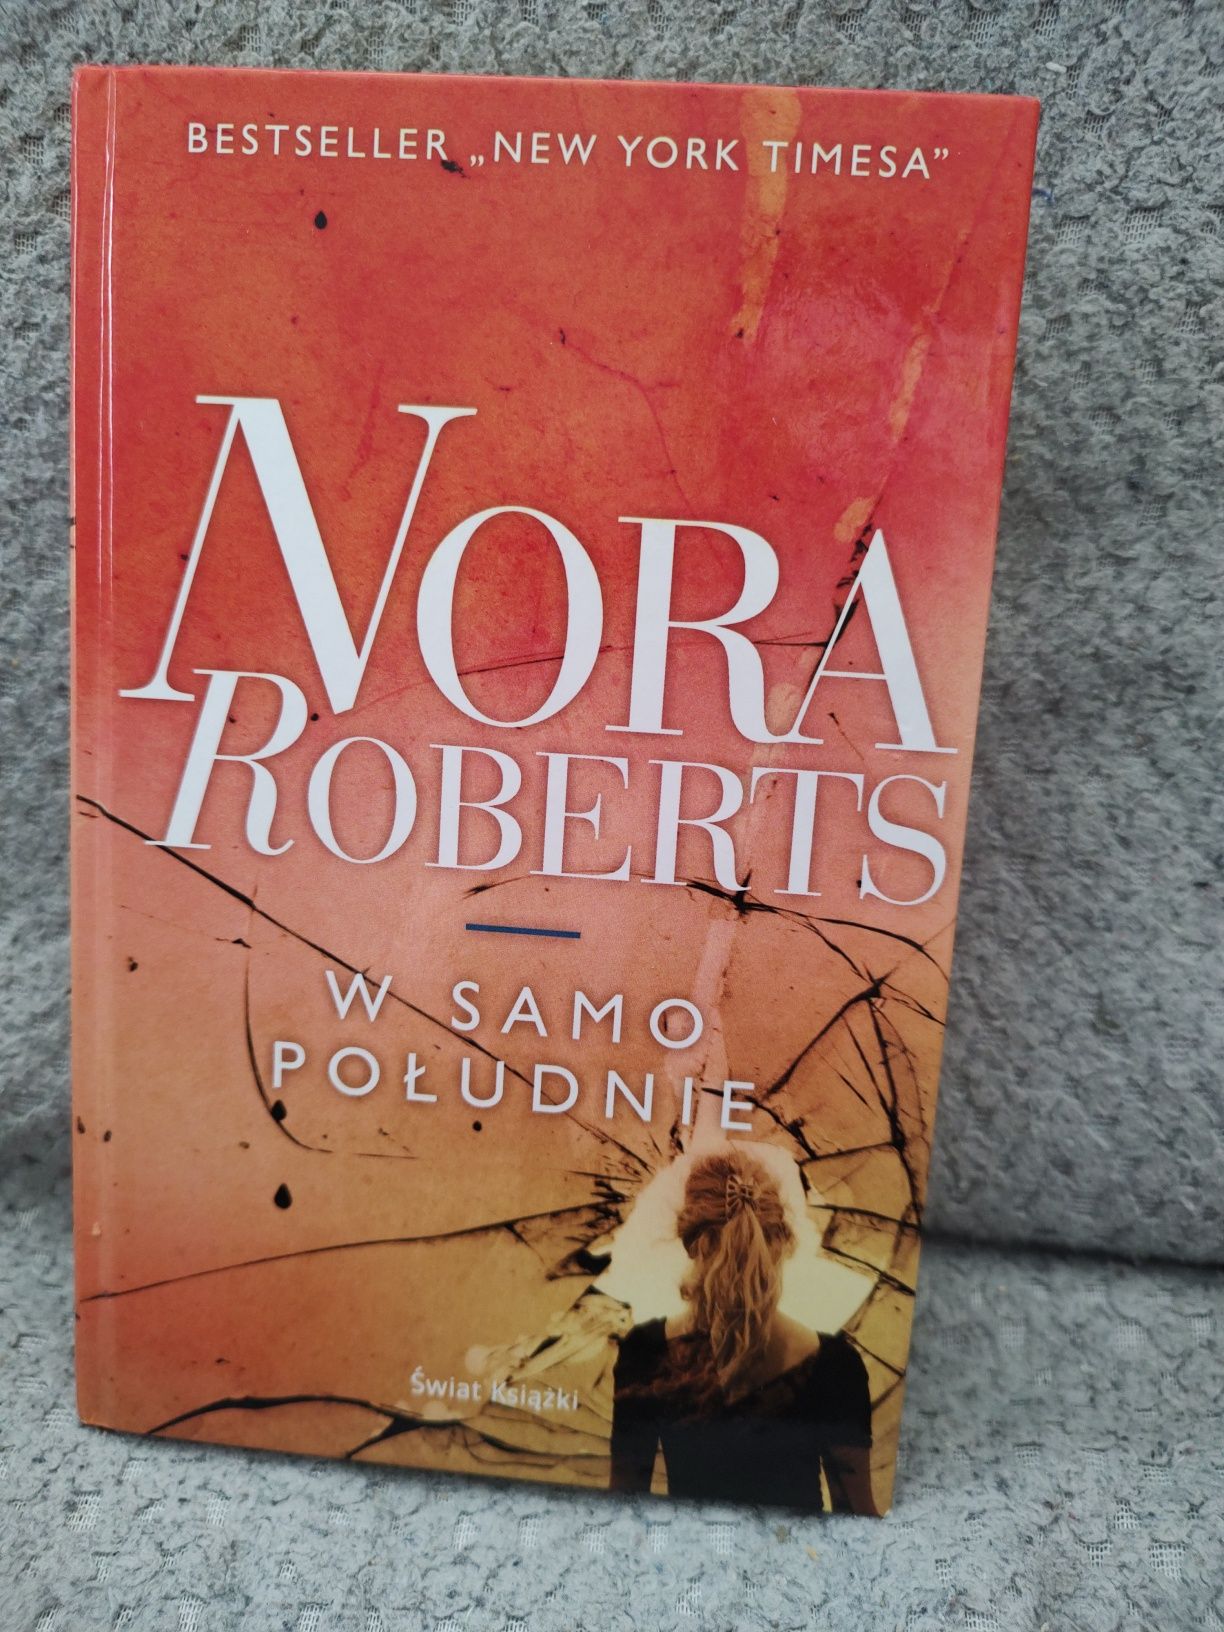 Książka Nora Roberts "W samo południe"